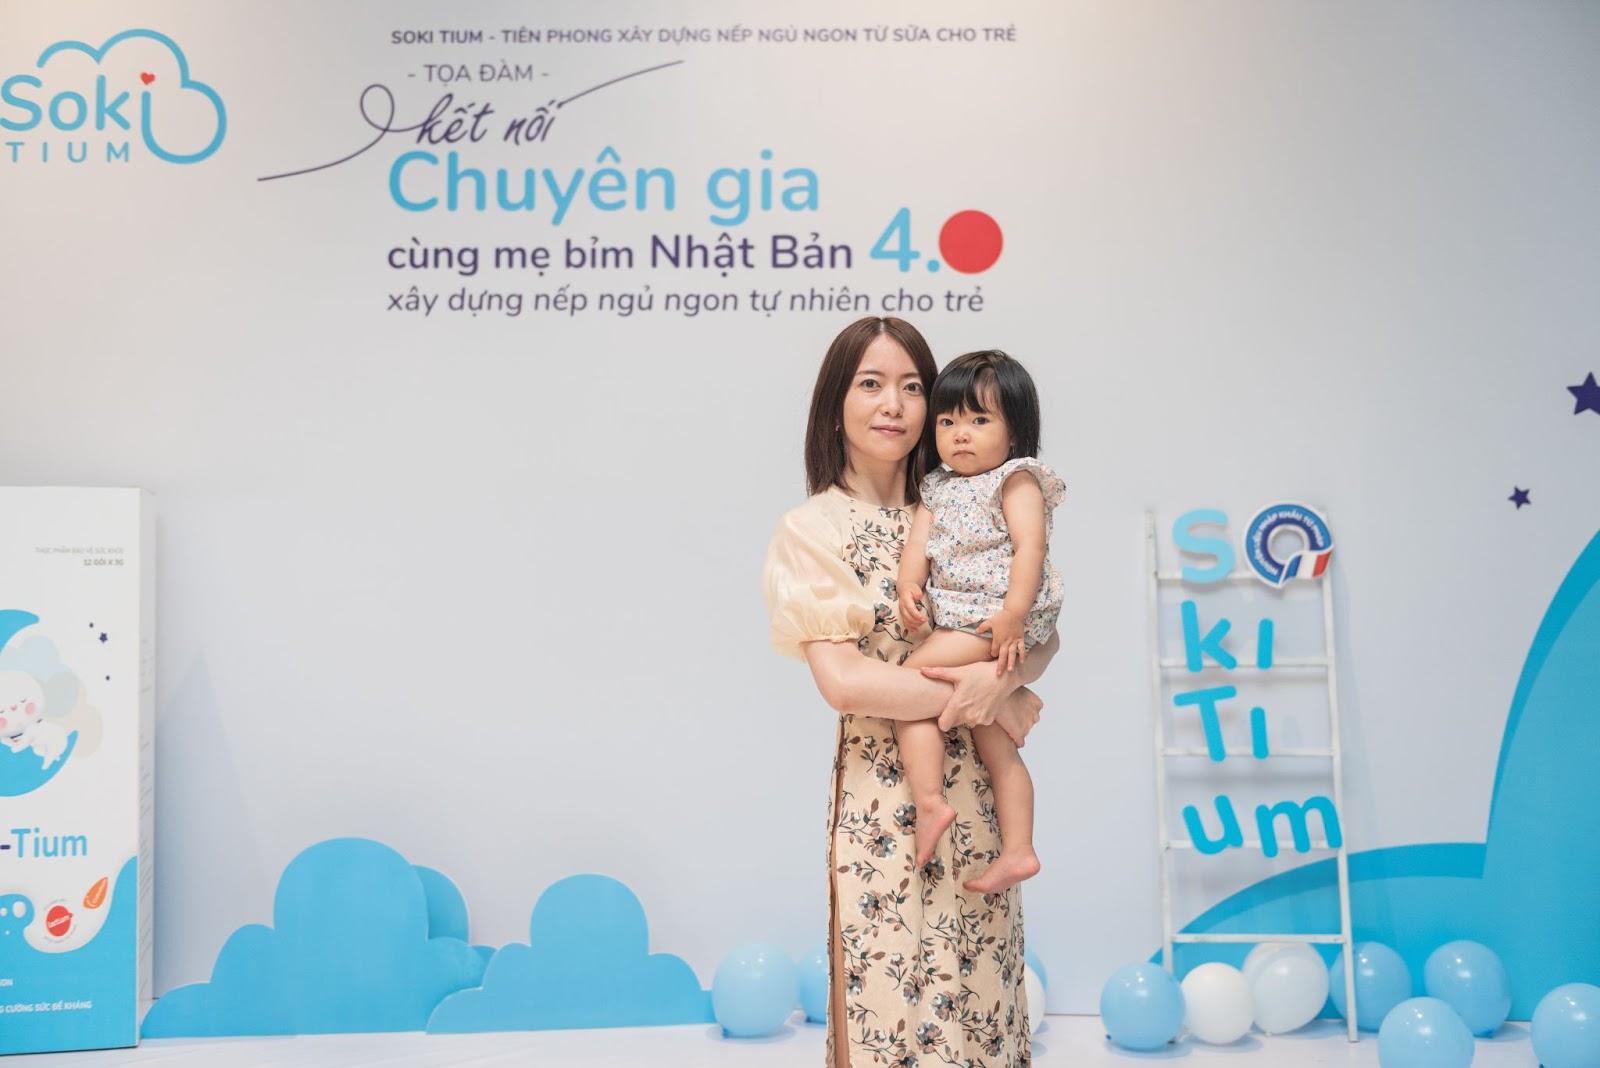 Sự kiện kết nối mẹ bỉm sữa Việt - Nhật từ Soki Tium: Hé lộ công thức xây dựng nếp ngủ ngon tự nhiên cho trẻ - Ảnh 2.